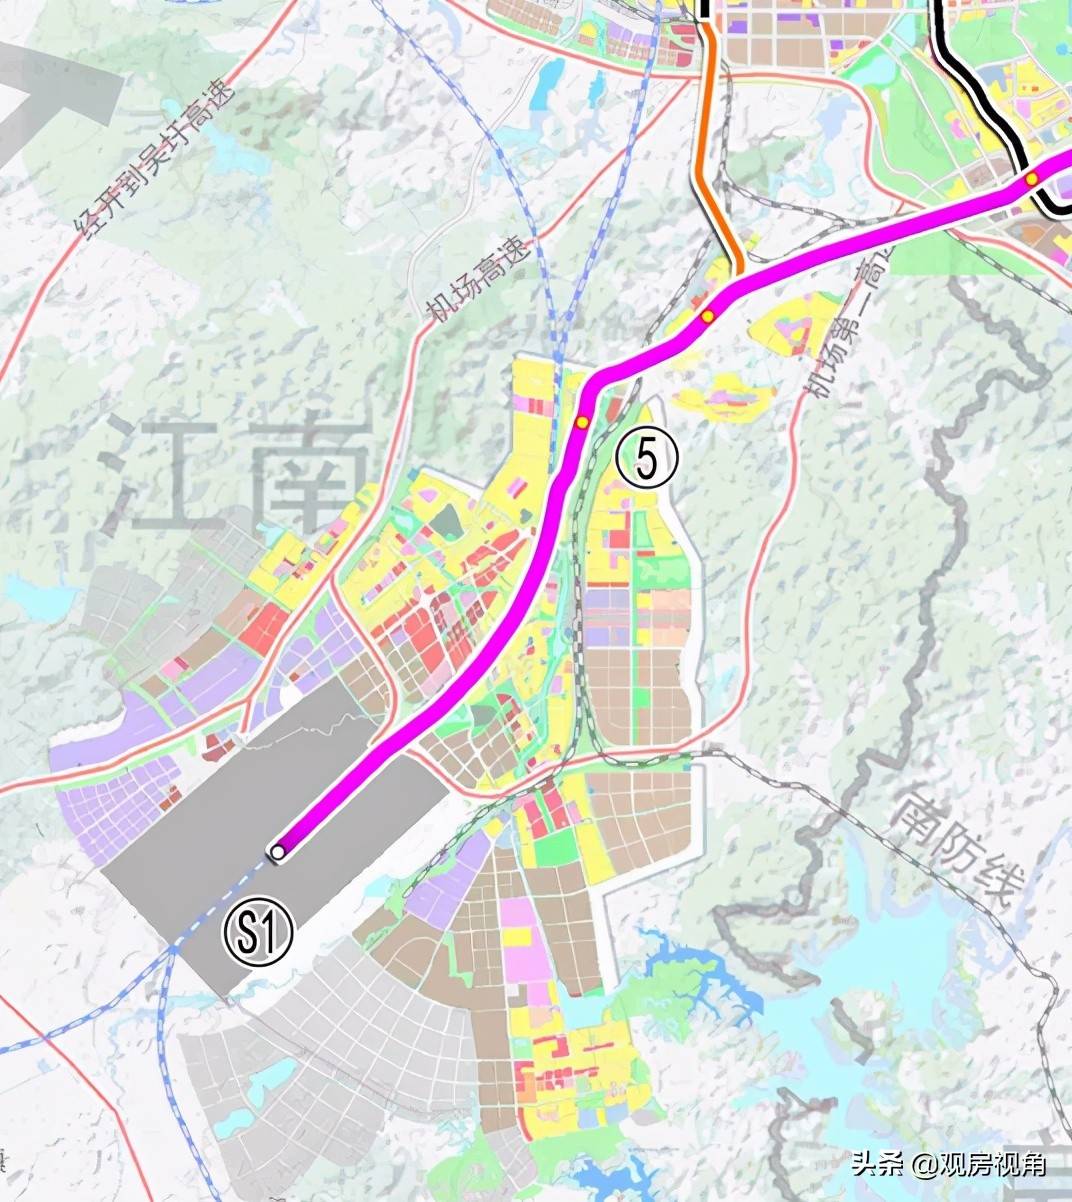 市郊铁路机场线(s1线)吴圩机场至玉洞段规划图